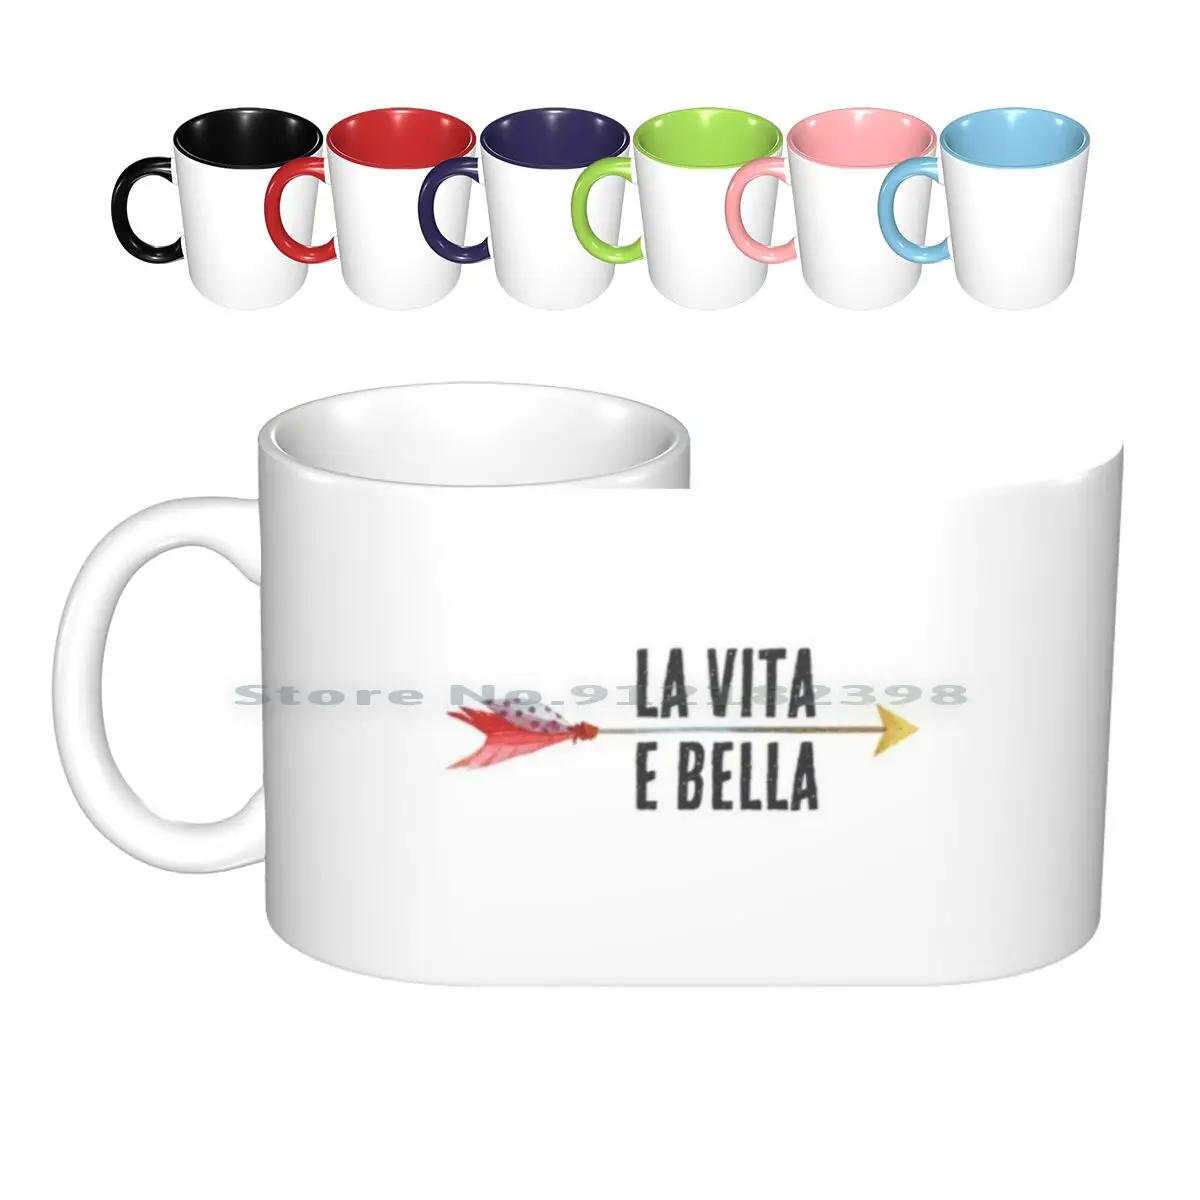 

La Vita E Bella - Life Красивая-вдохновляющая цитата-итальянские Керамические Кружки Кофейные чашки Кружка для молока и чая La Vita E Bella Italia